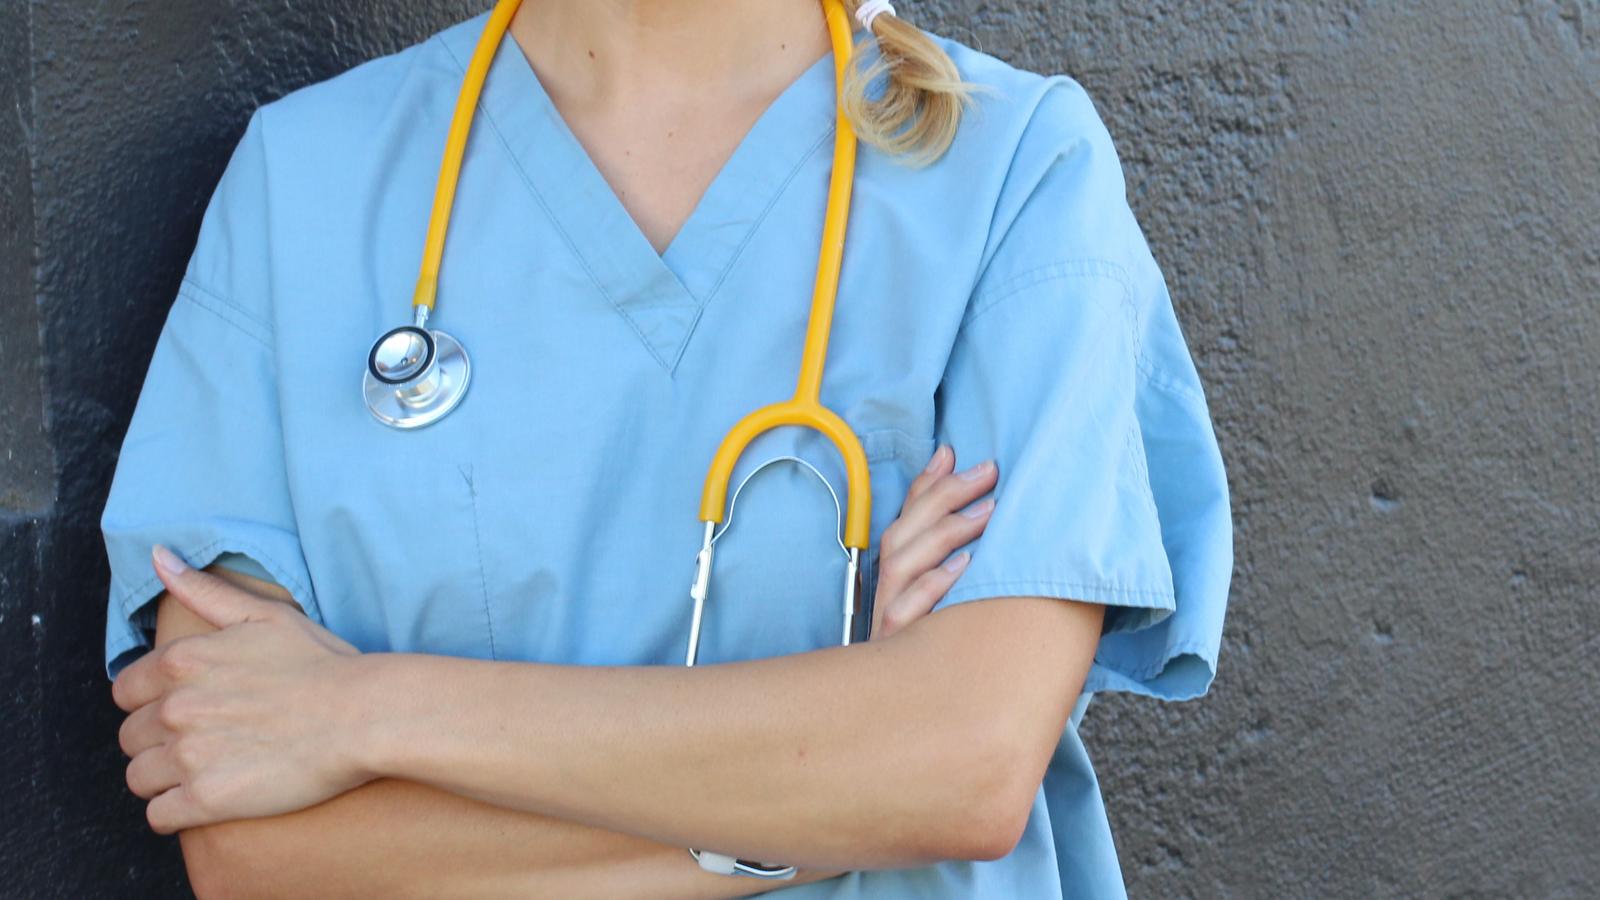 Une infirmière dit préférer perdre son travail plutôt que de se faire vacciner contre la COVID